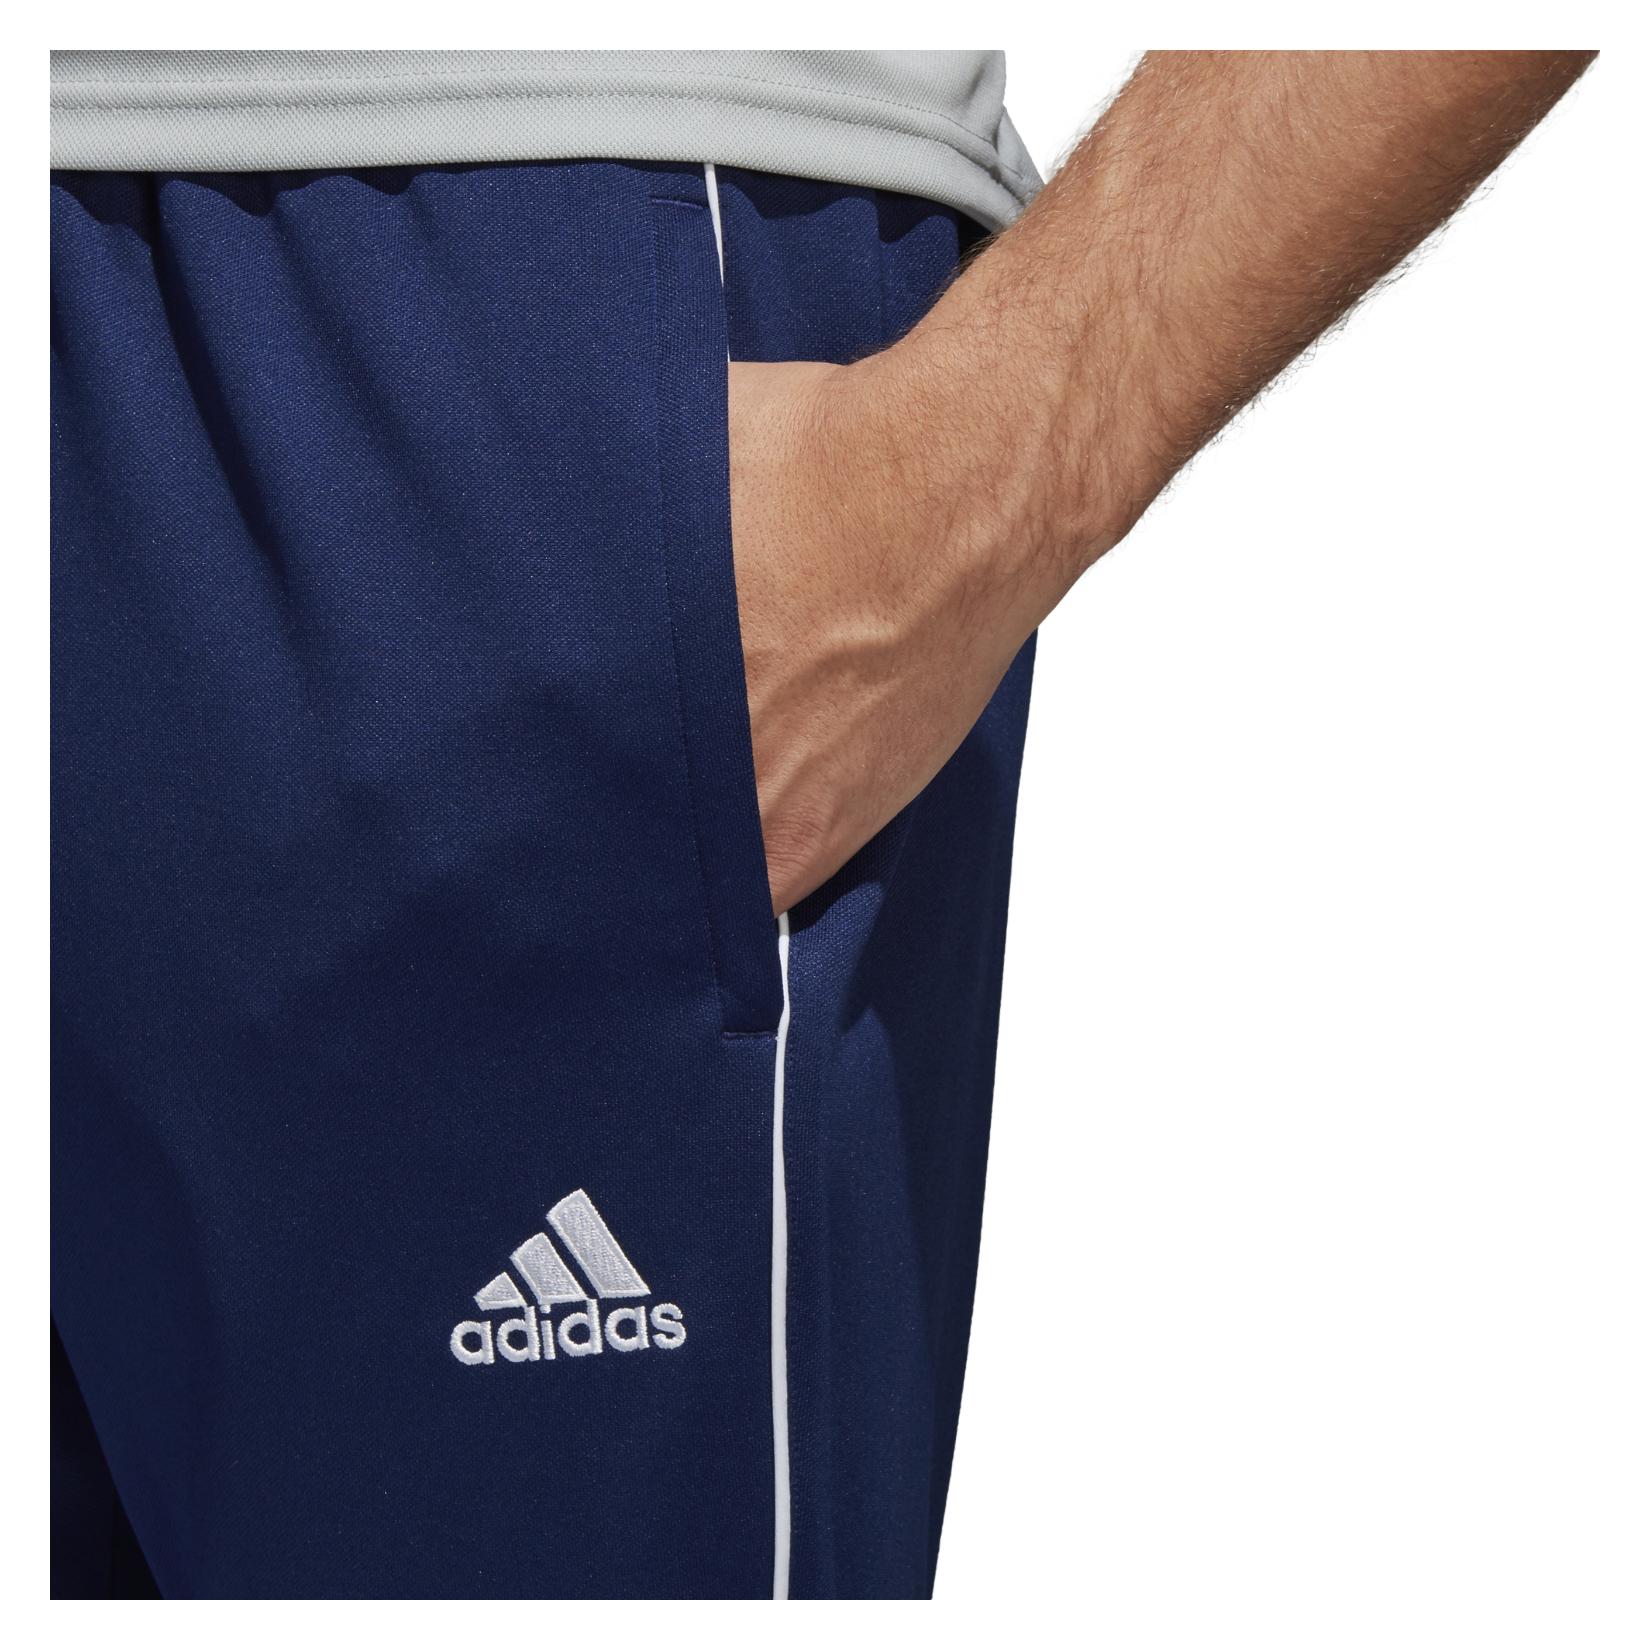 Adidas Core 18 Training Pant